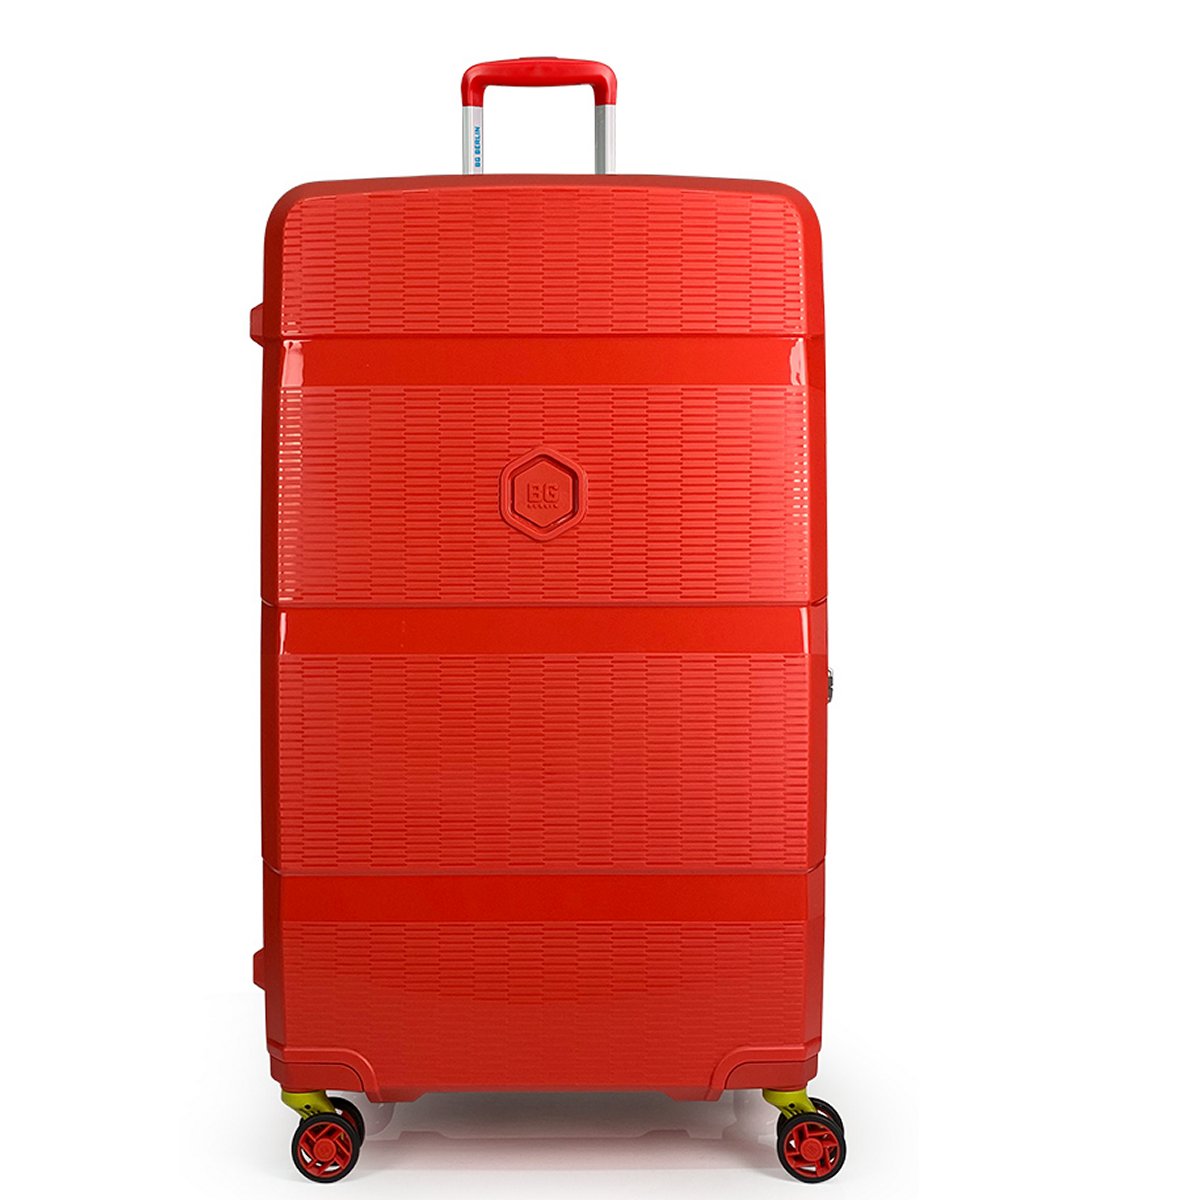 Zip2 Luggage - Hartschalenkoffer L in Rot von BG Berlin